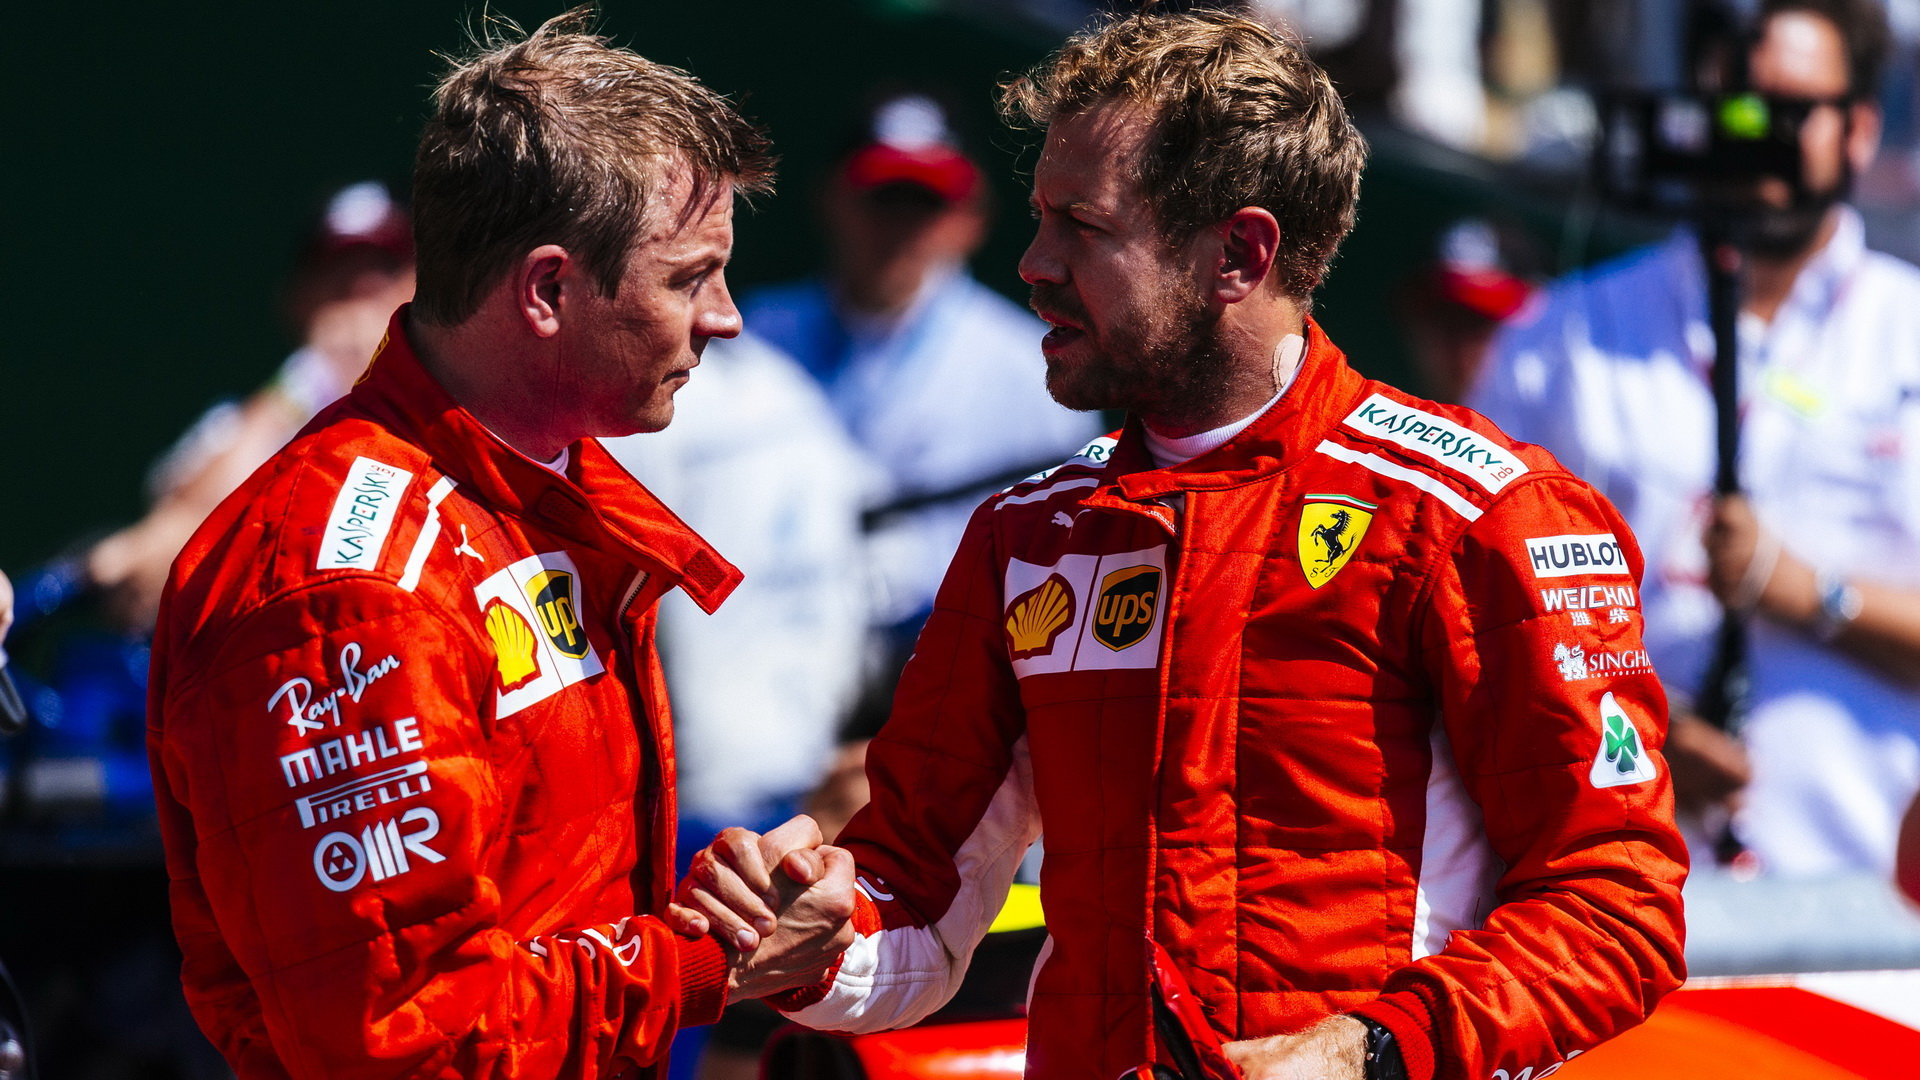 Kimi Räikkönen a Sebastian Vettel po úspěšném závodě v Silverstone